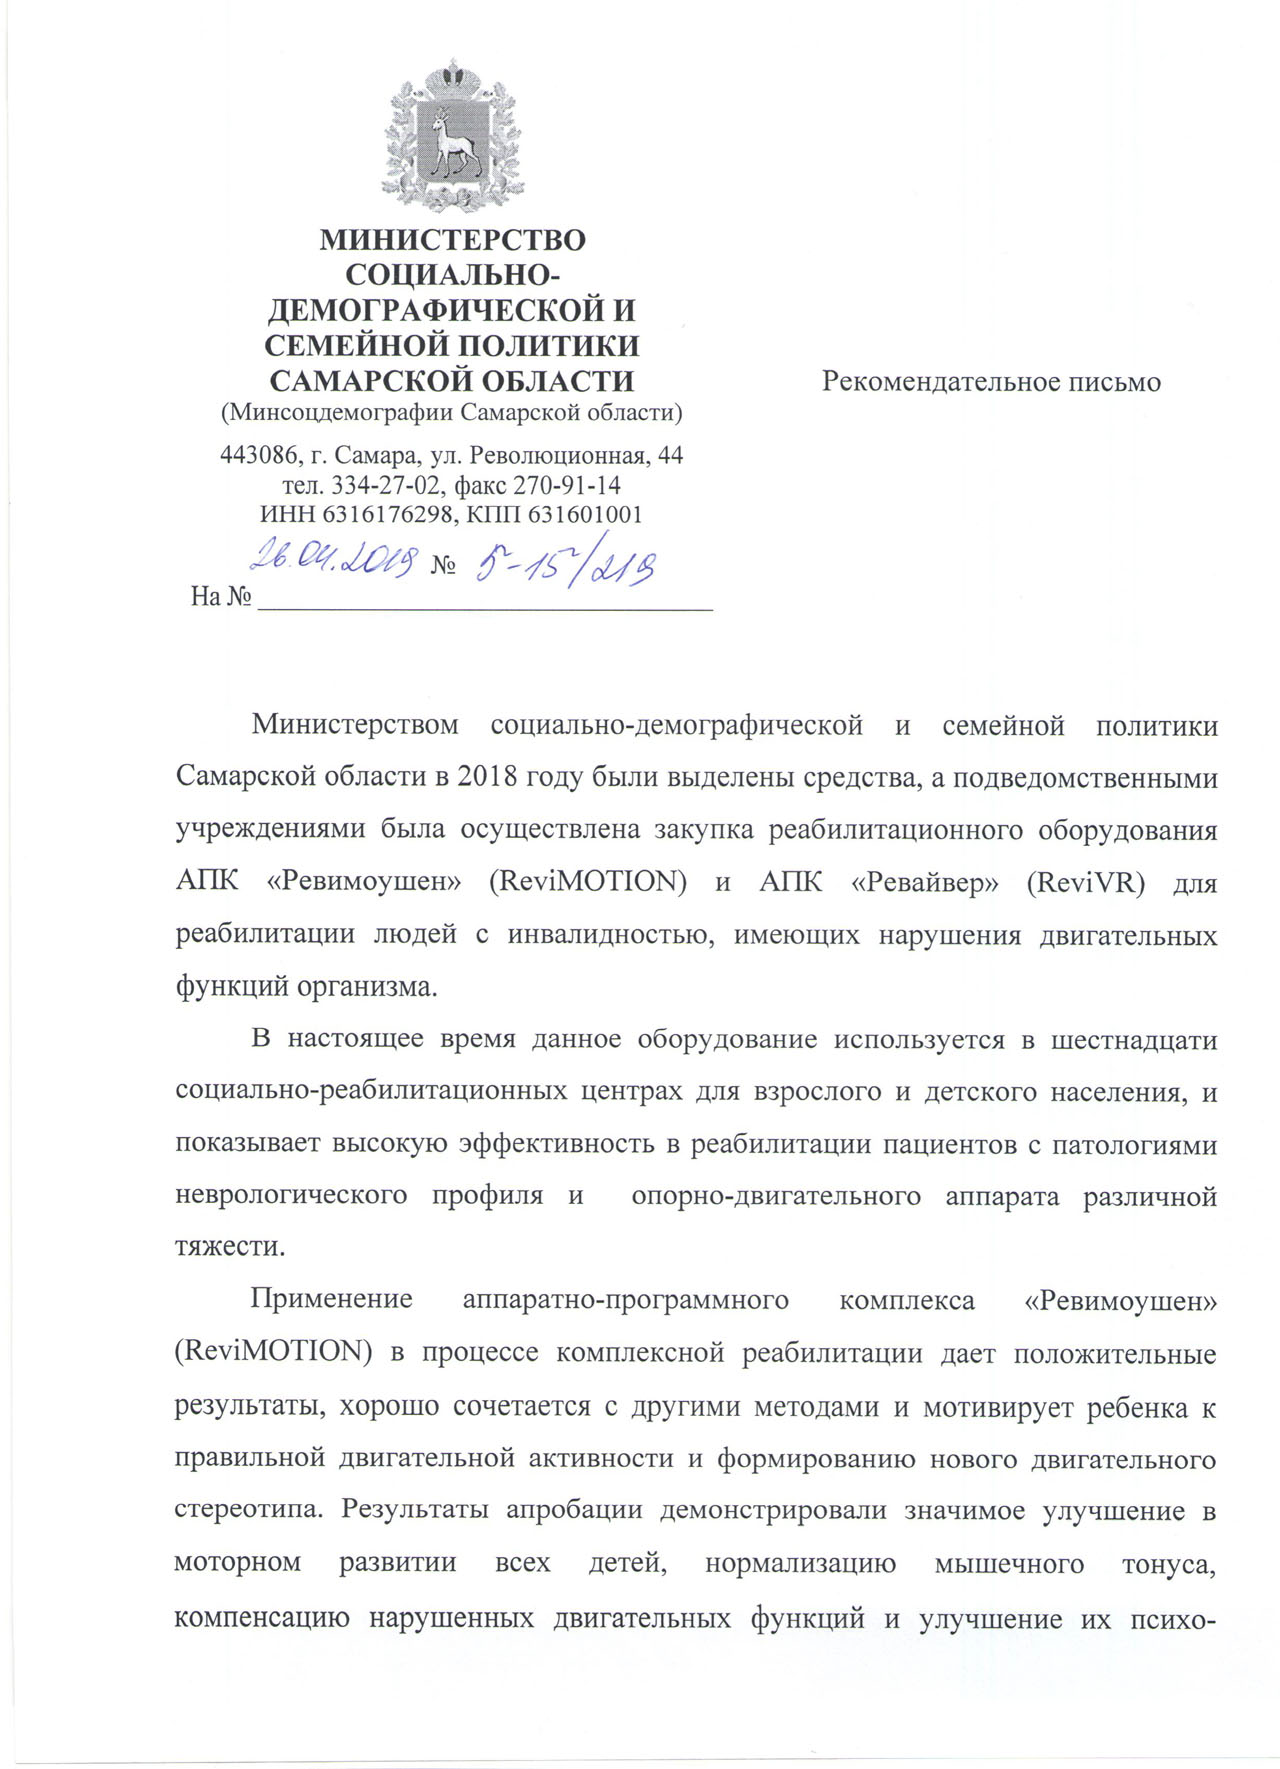 Отзыв о ревимоушн от Министерства социально-демографической и семейной политики Самарской области